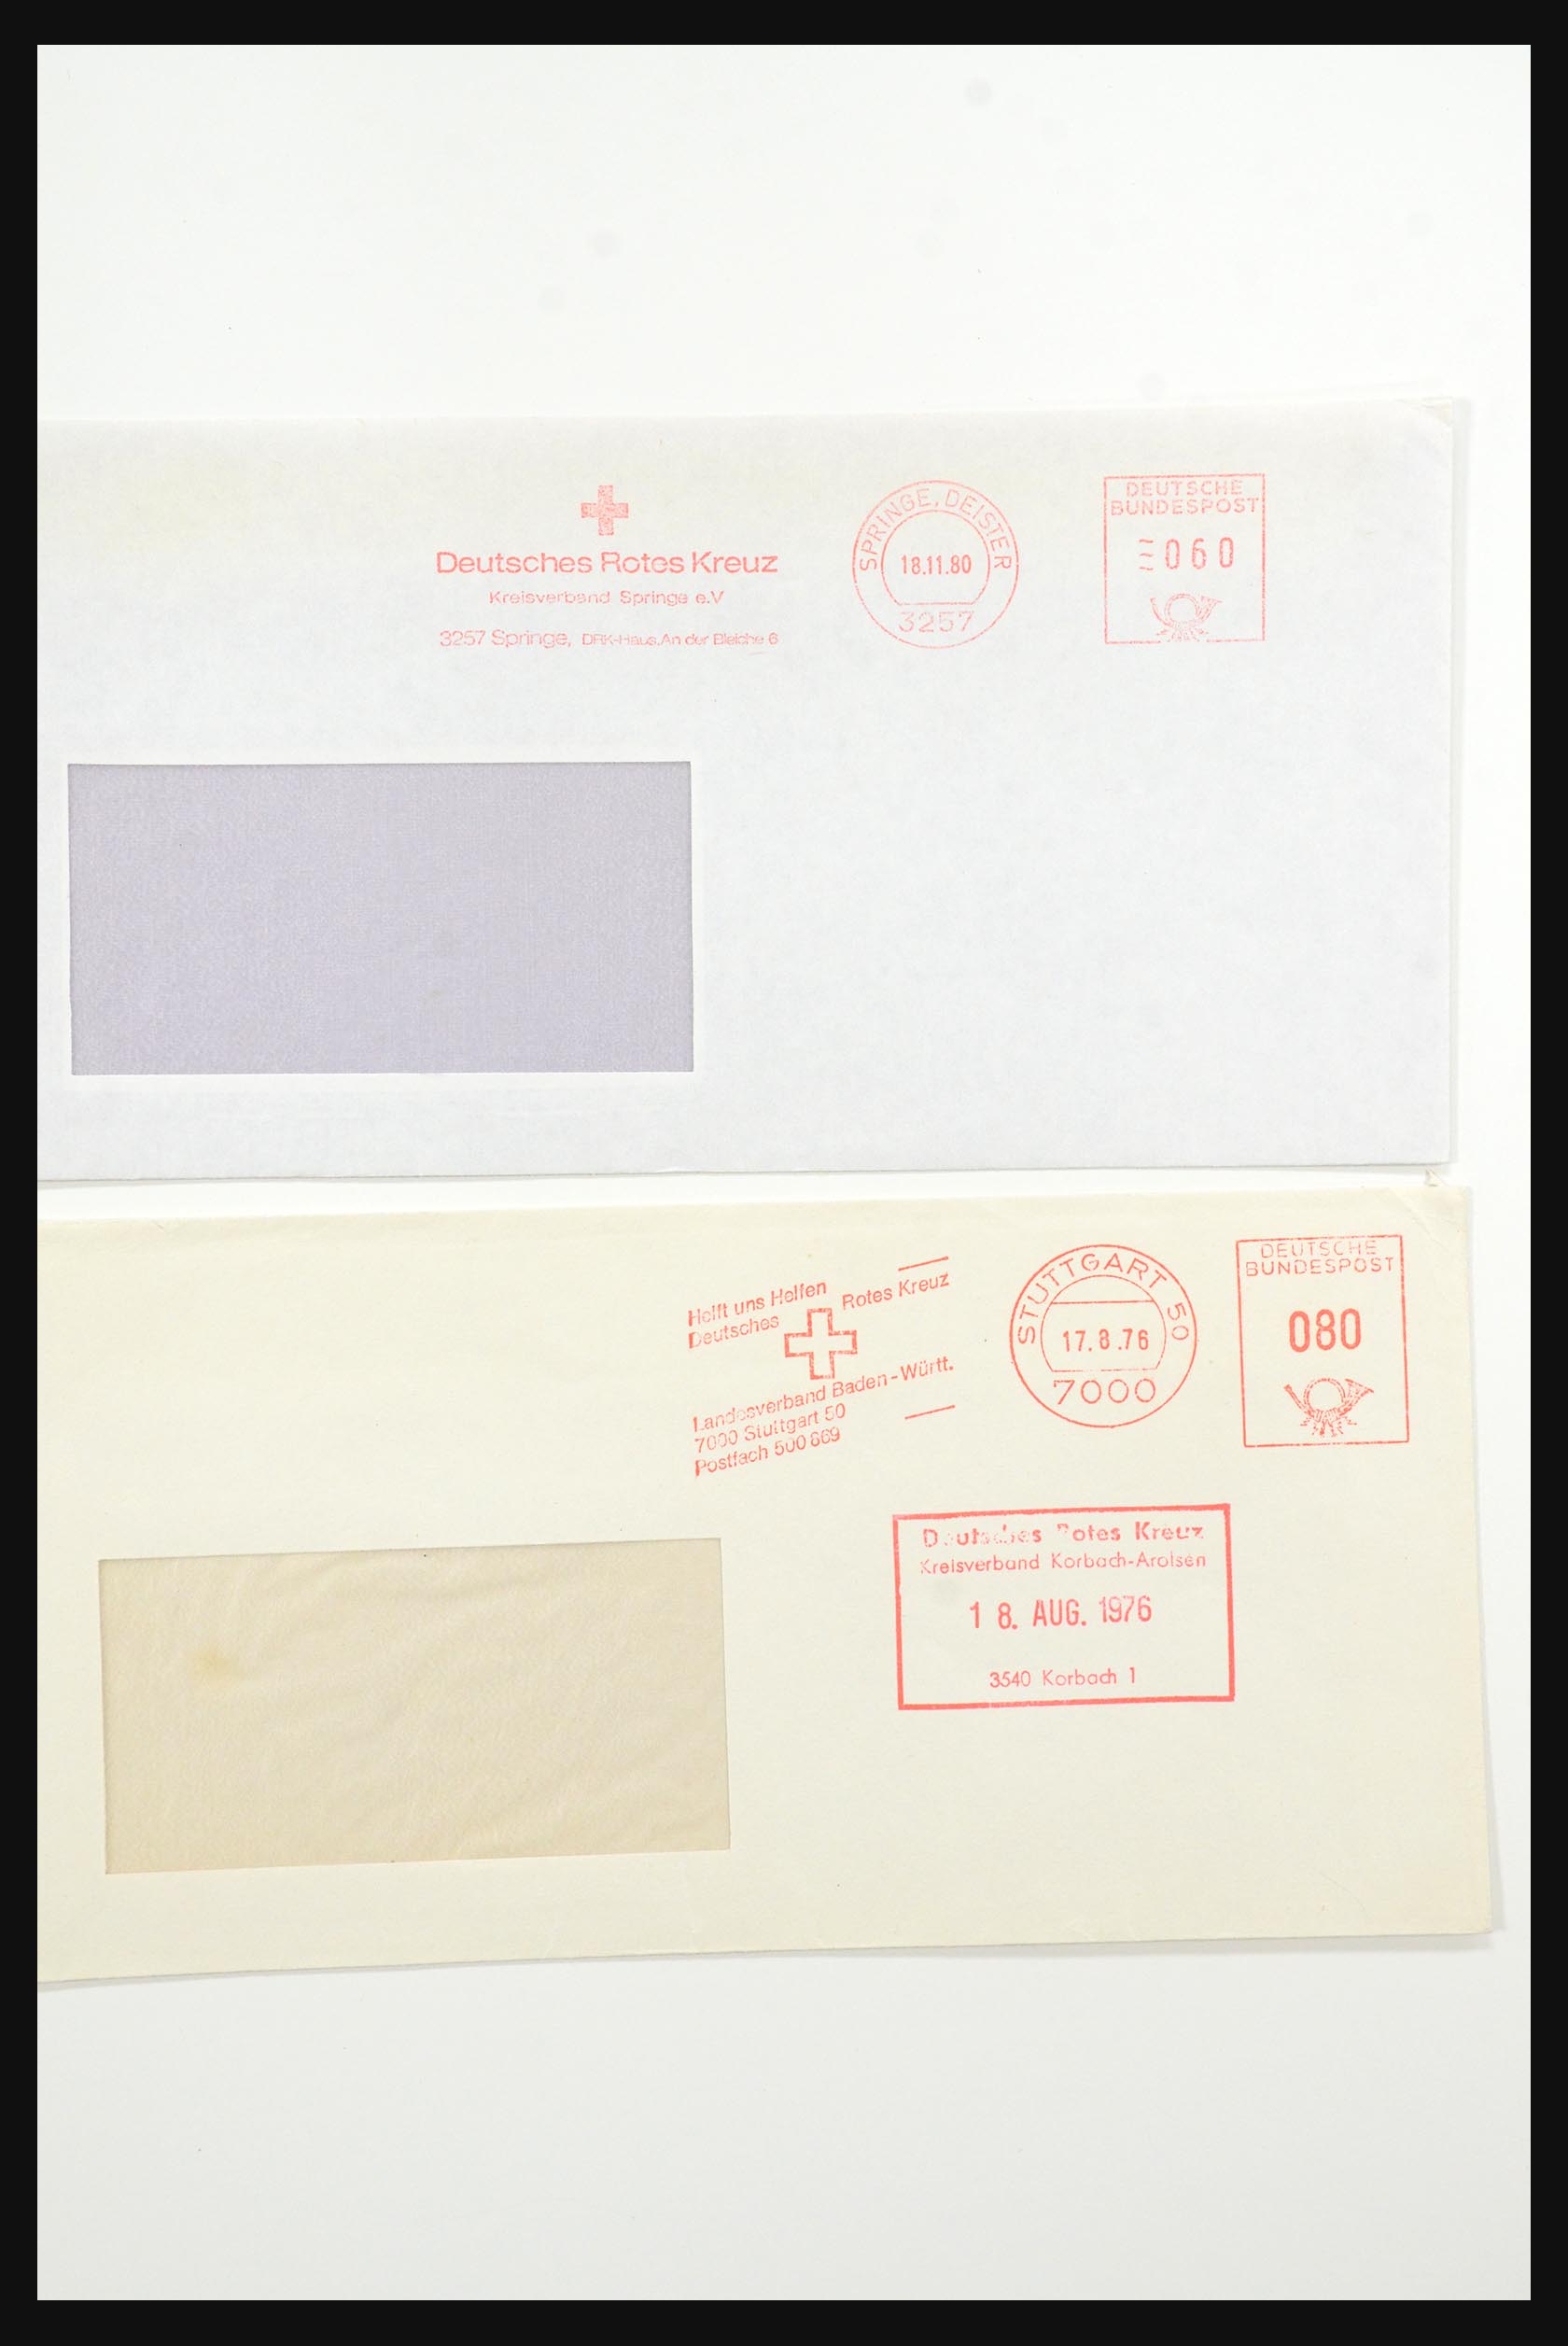 31365 1061 - 31365 Rode kruis brieven 1905-1975.